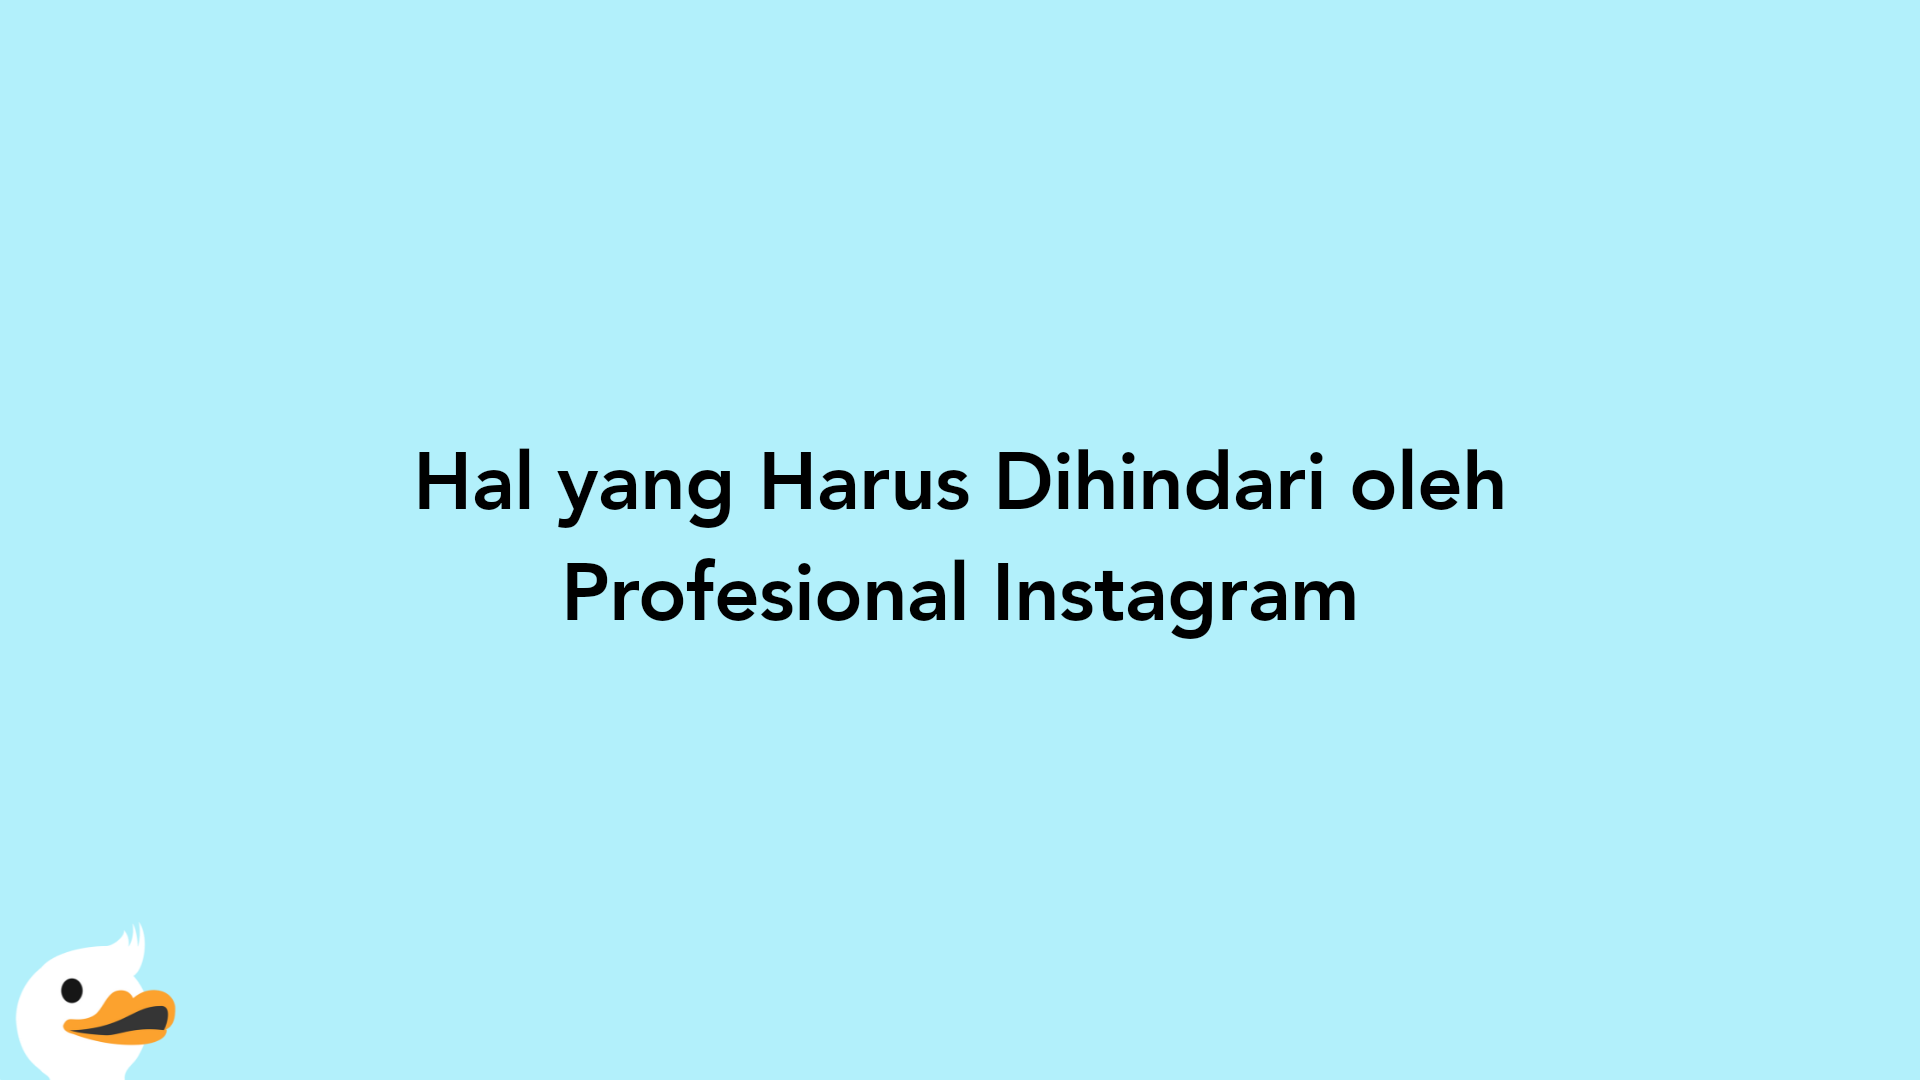 Hal yang Harus Dihindari oleh Profesional Instagram